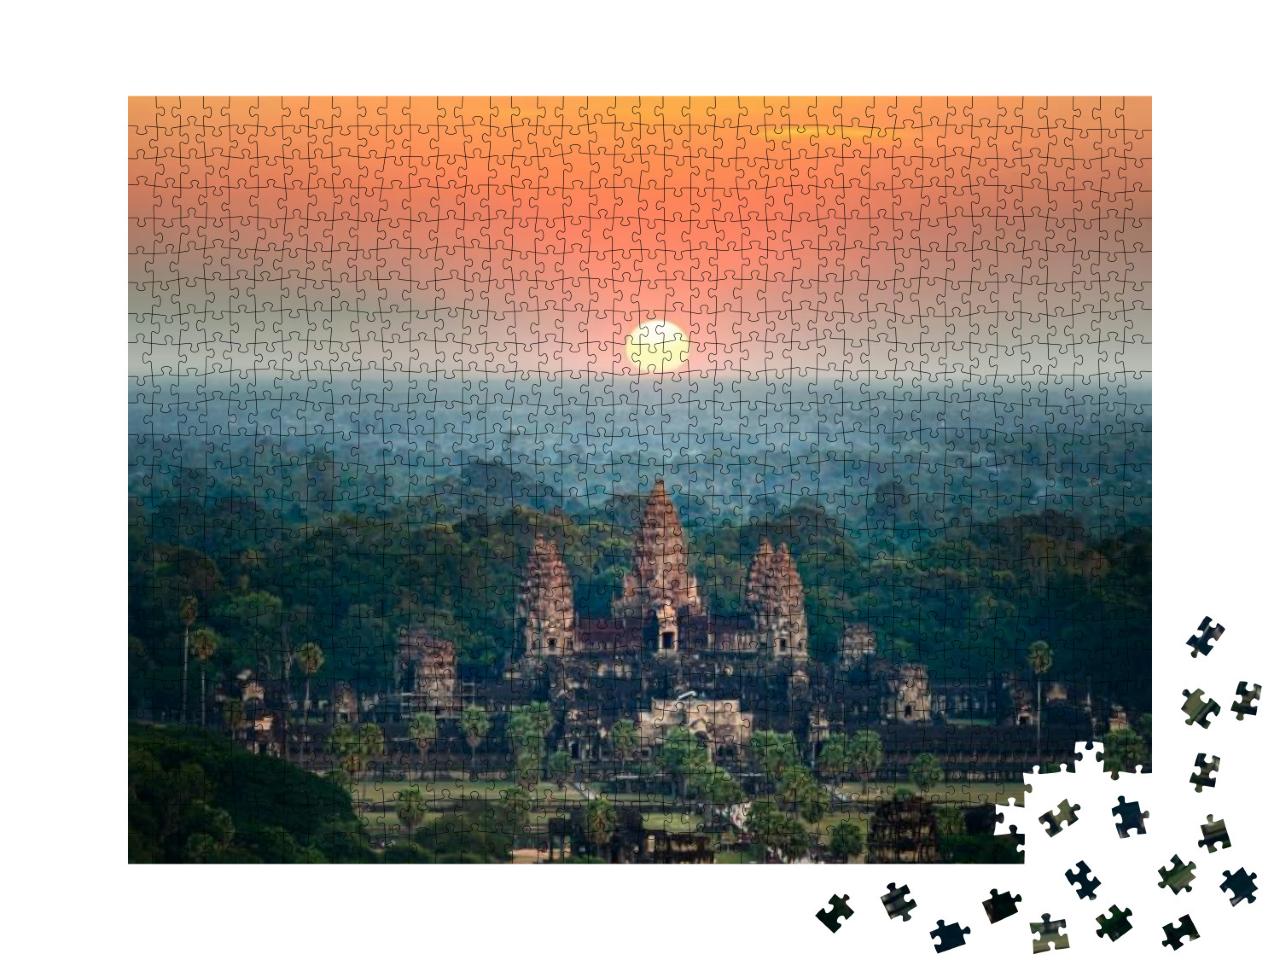 Puzzle 1000 Teile „Angkor Wat bei Sonnenaufgang, Siem Reap, Kambodscha“